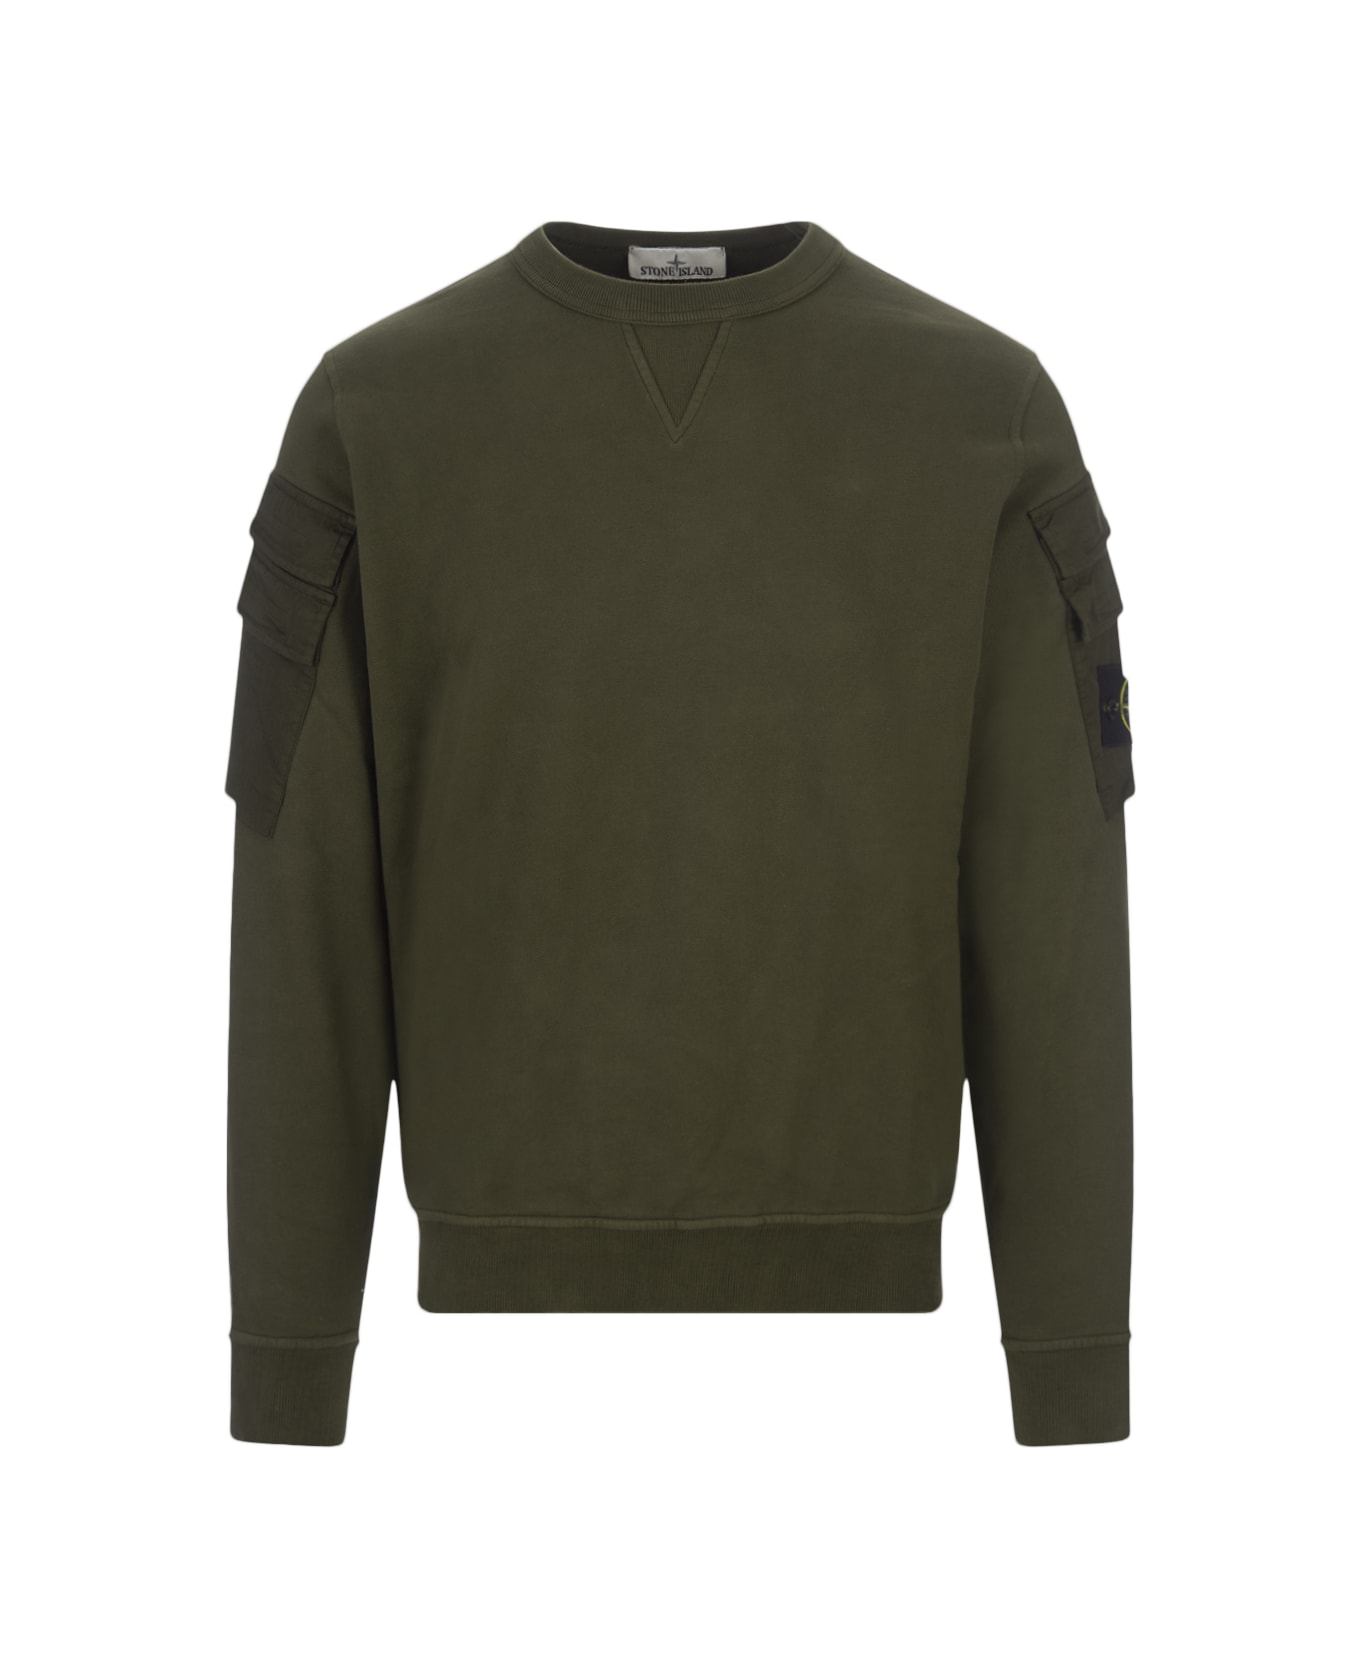 Stone Island Cotton Sweatshirt - Verde フリース